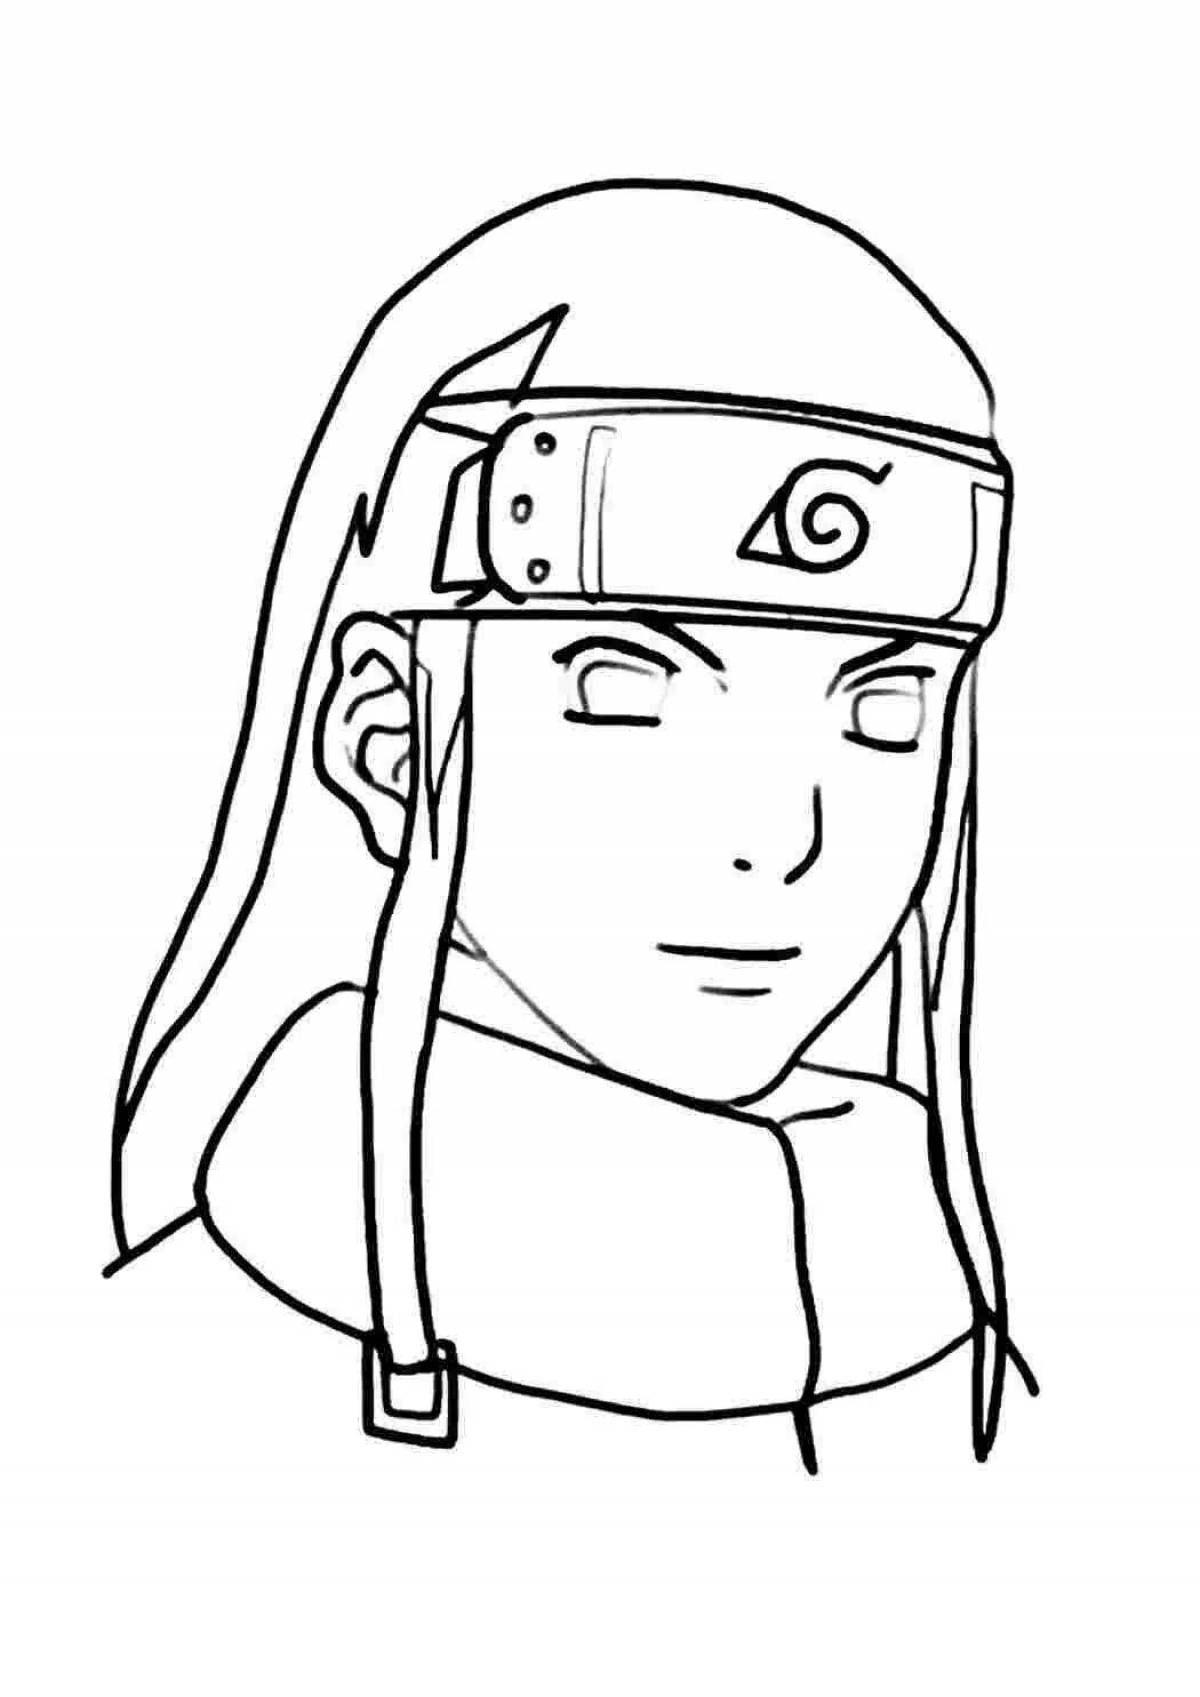 Naruto dynamic character coloring